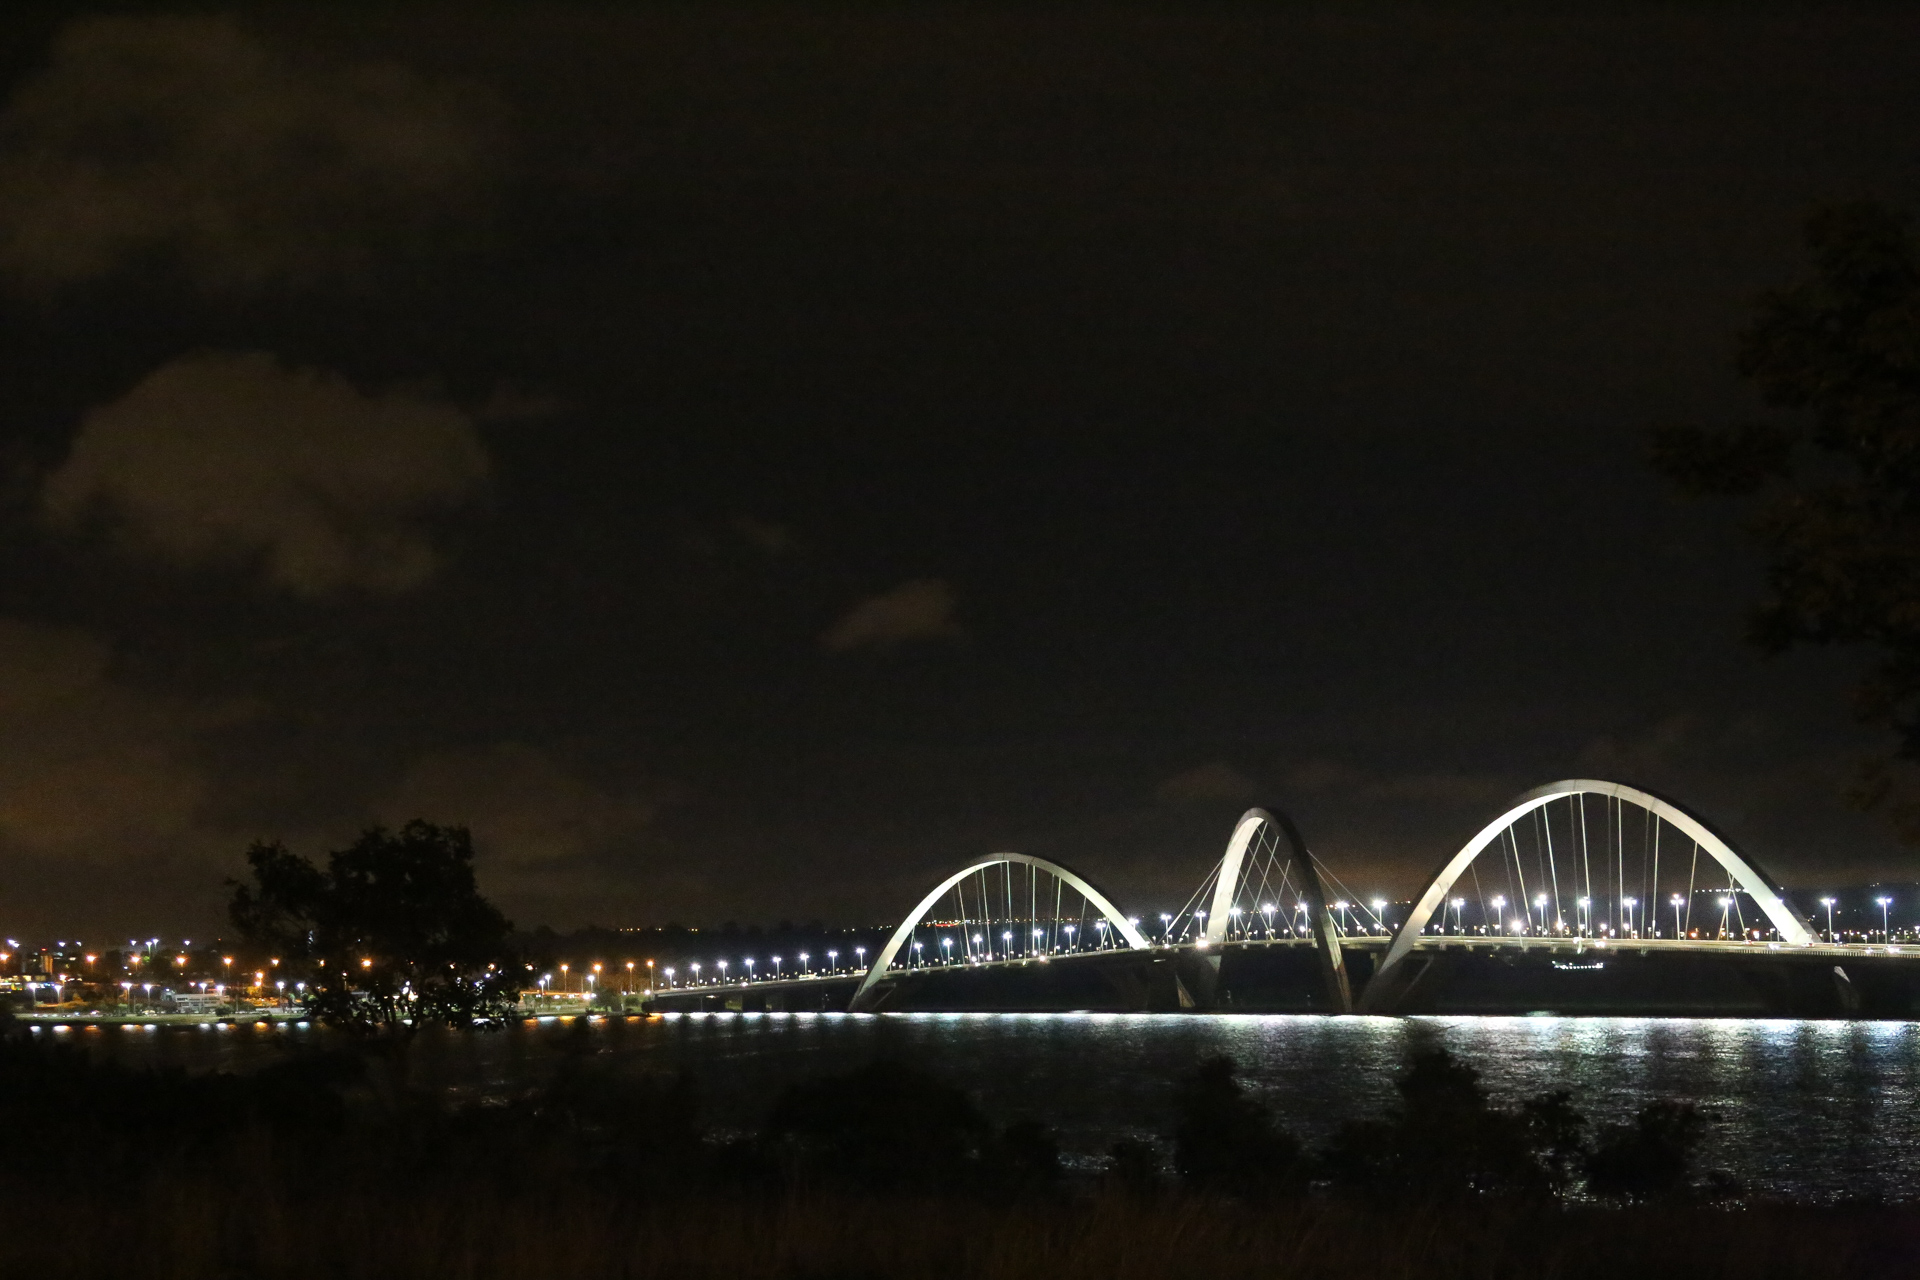 Le pont Jucelino Kubitschek Brasilia